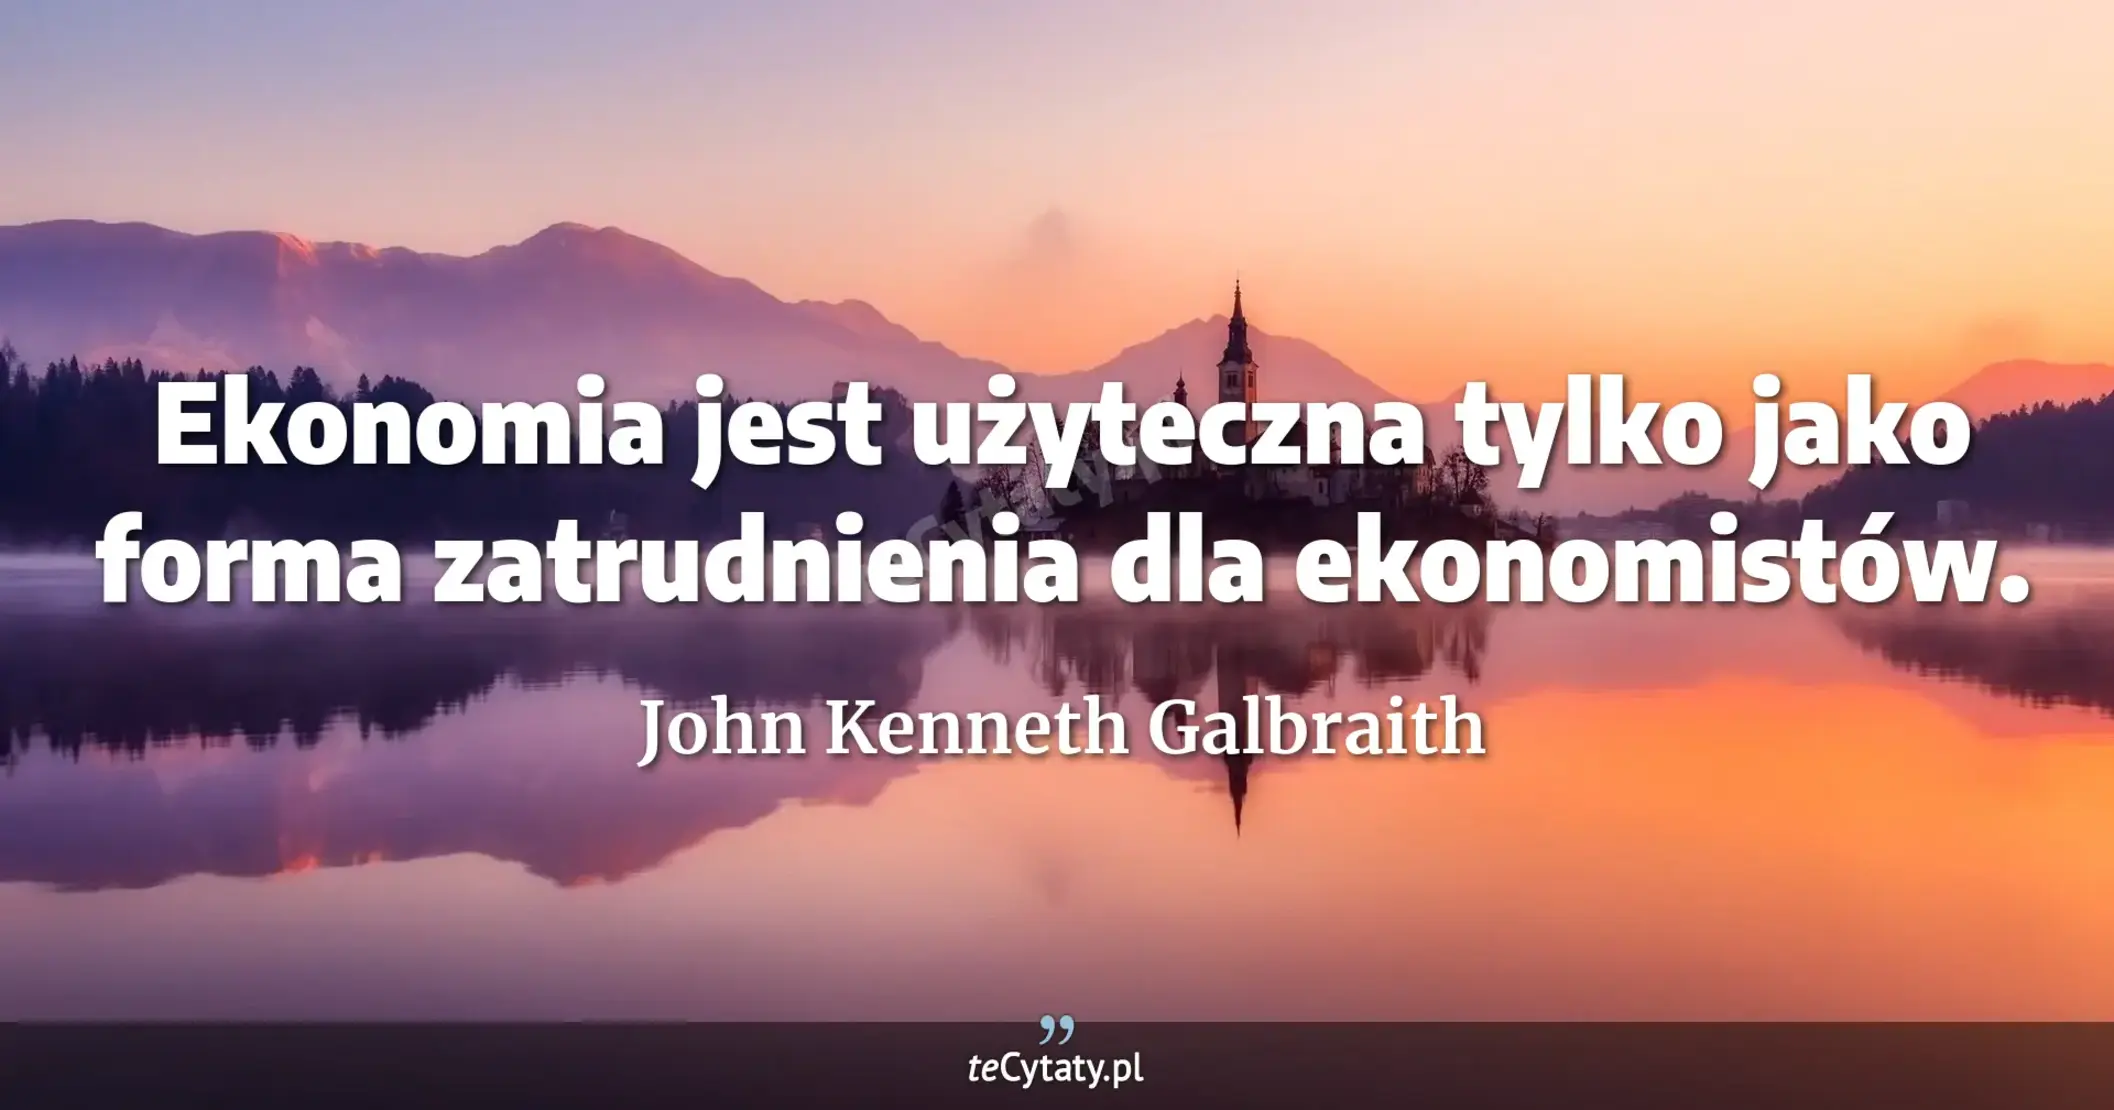 Ekonomia jest użyteczna tylko jako forma zatrudnienia dla ekonomistów. - John Kenneth Galbraith